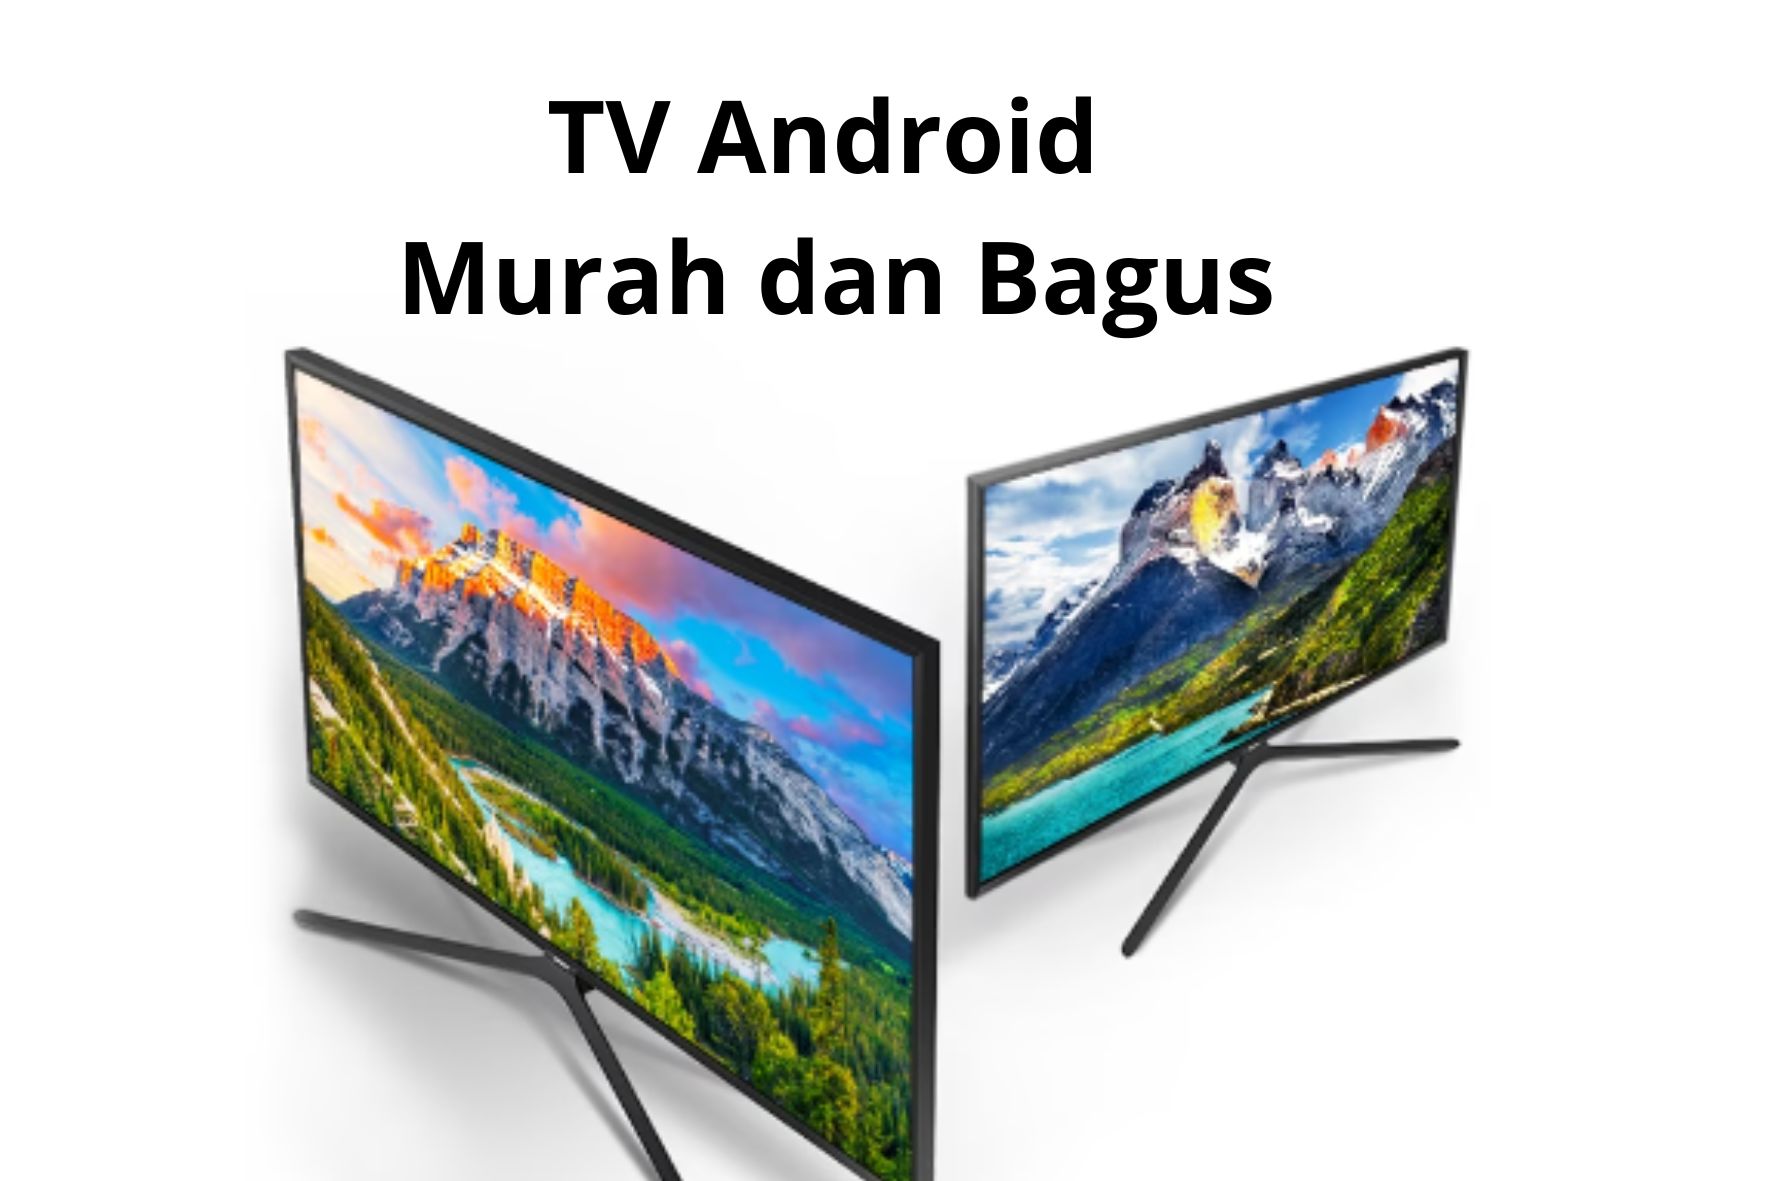 5 Rekomendasi TV Android Murah dan Bagus, Spek Unggulan Gak Bikin Kantong Jebol